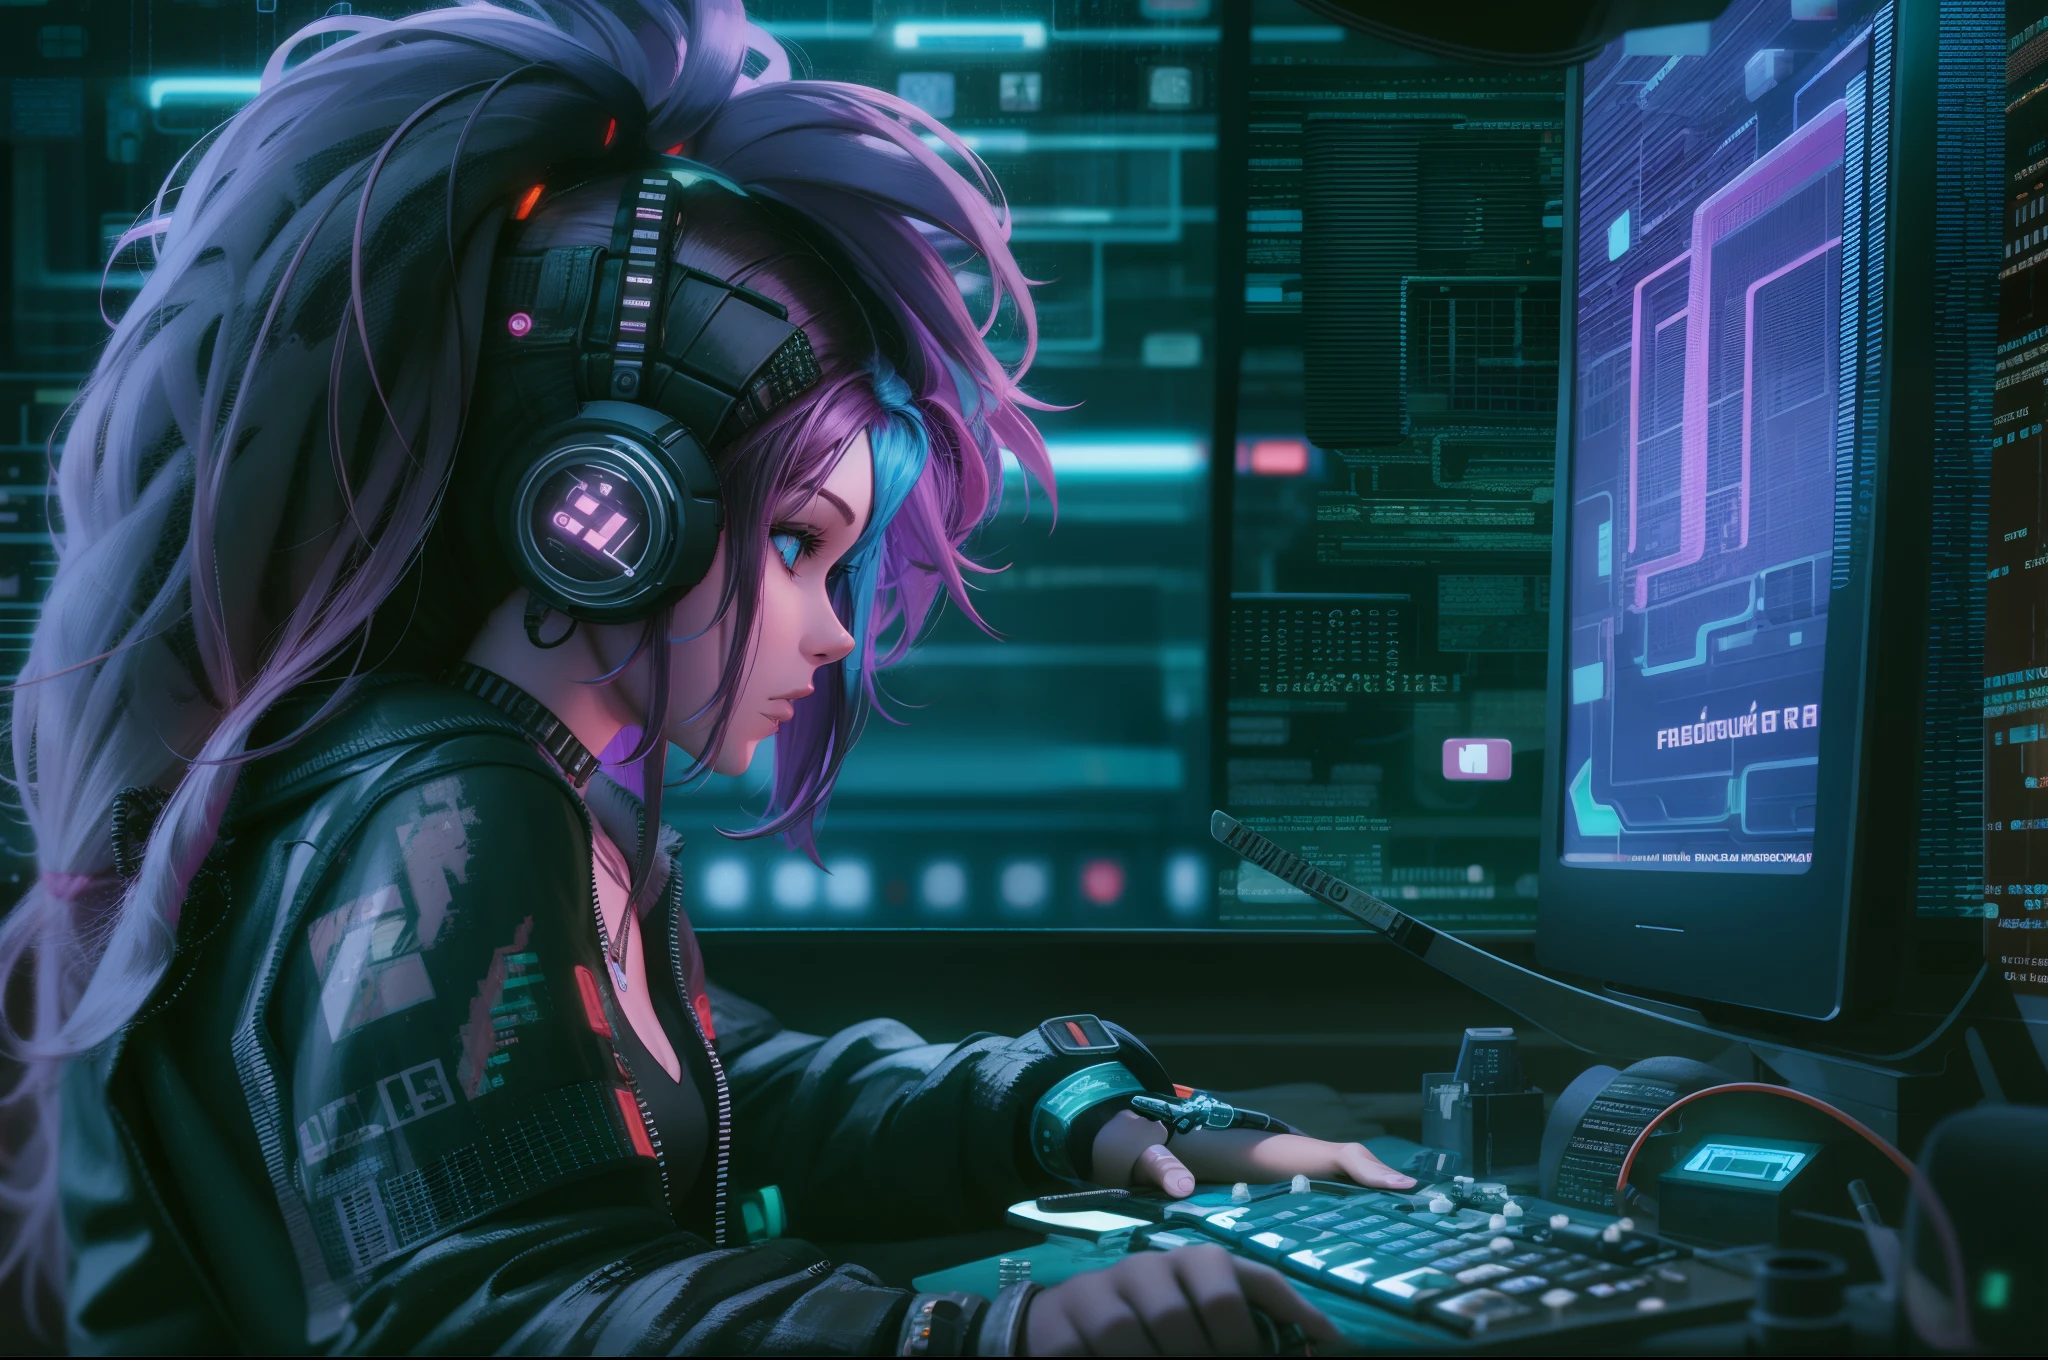 ((melhor qualidade)), ((Obra de arte)), (altamente detalhado:1.3), 3D, lindo (ciberpunk:1.3) mulher hacker com cabelos grossos e volumosos operando um terminal de computador